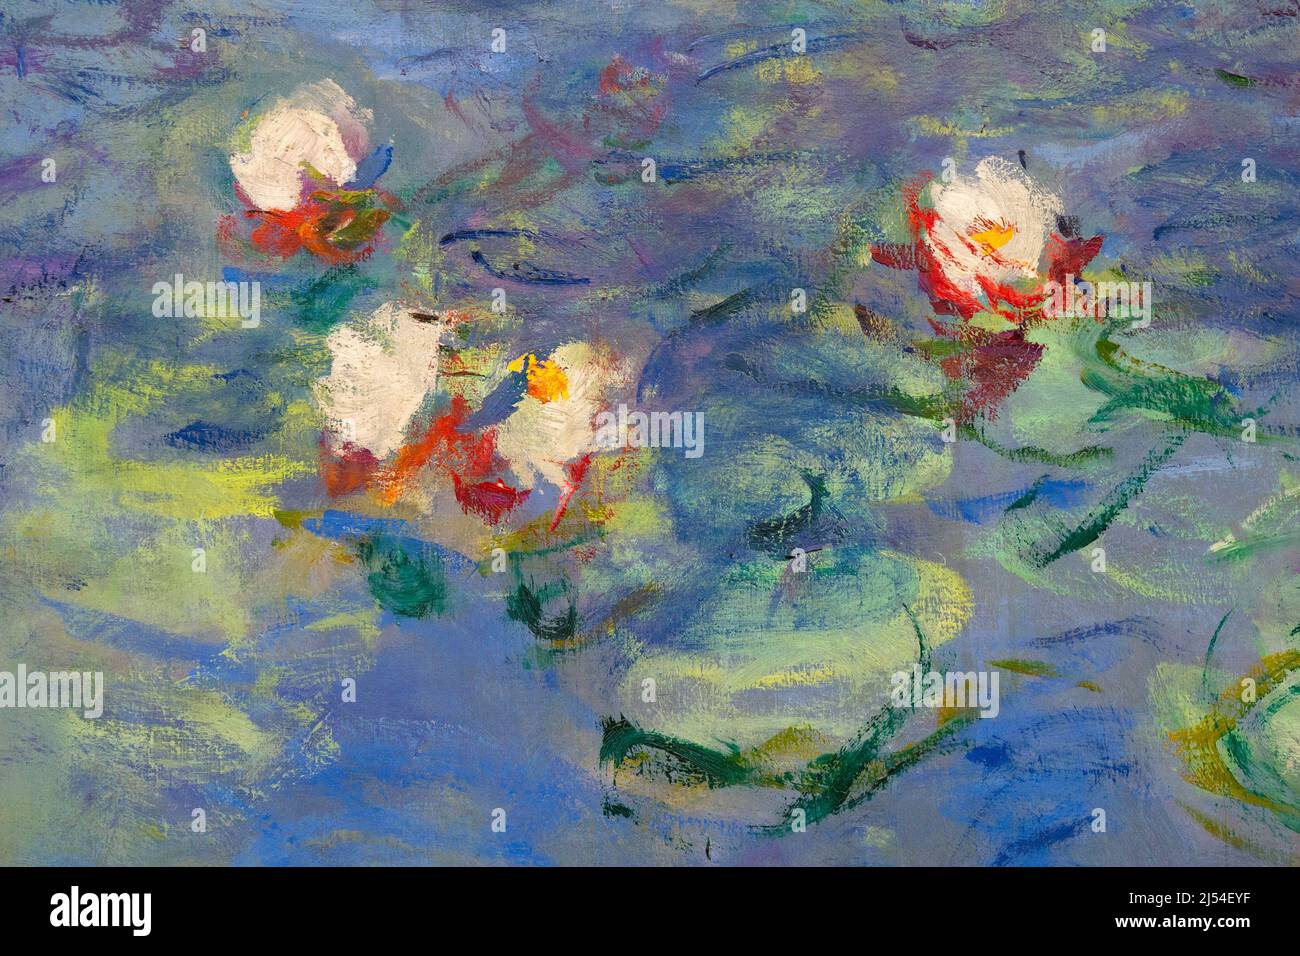 Nympheas, Water Lilies, Claude Monet, 1918-1926, Musee de L'Orangerie, Paris, France, Europe Stock Photo